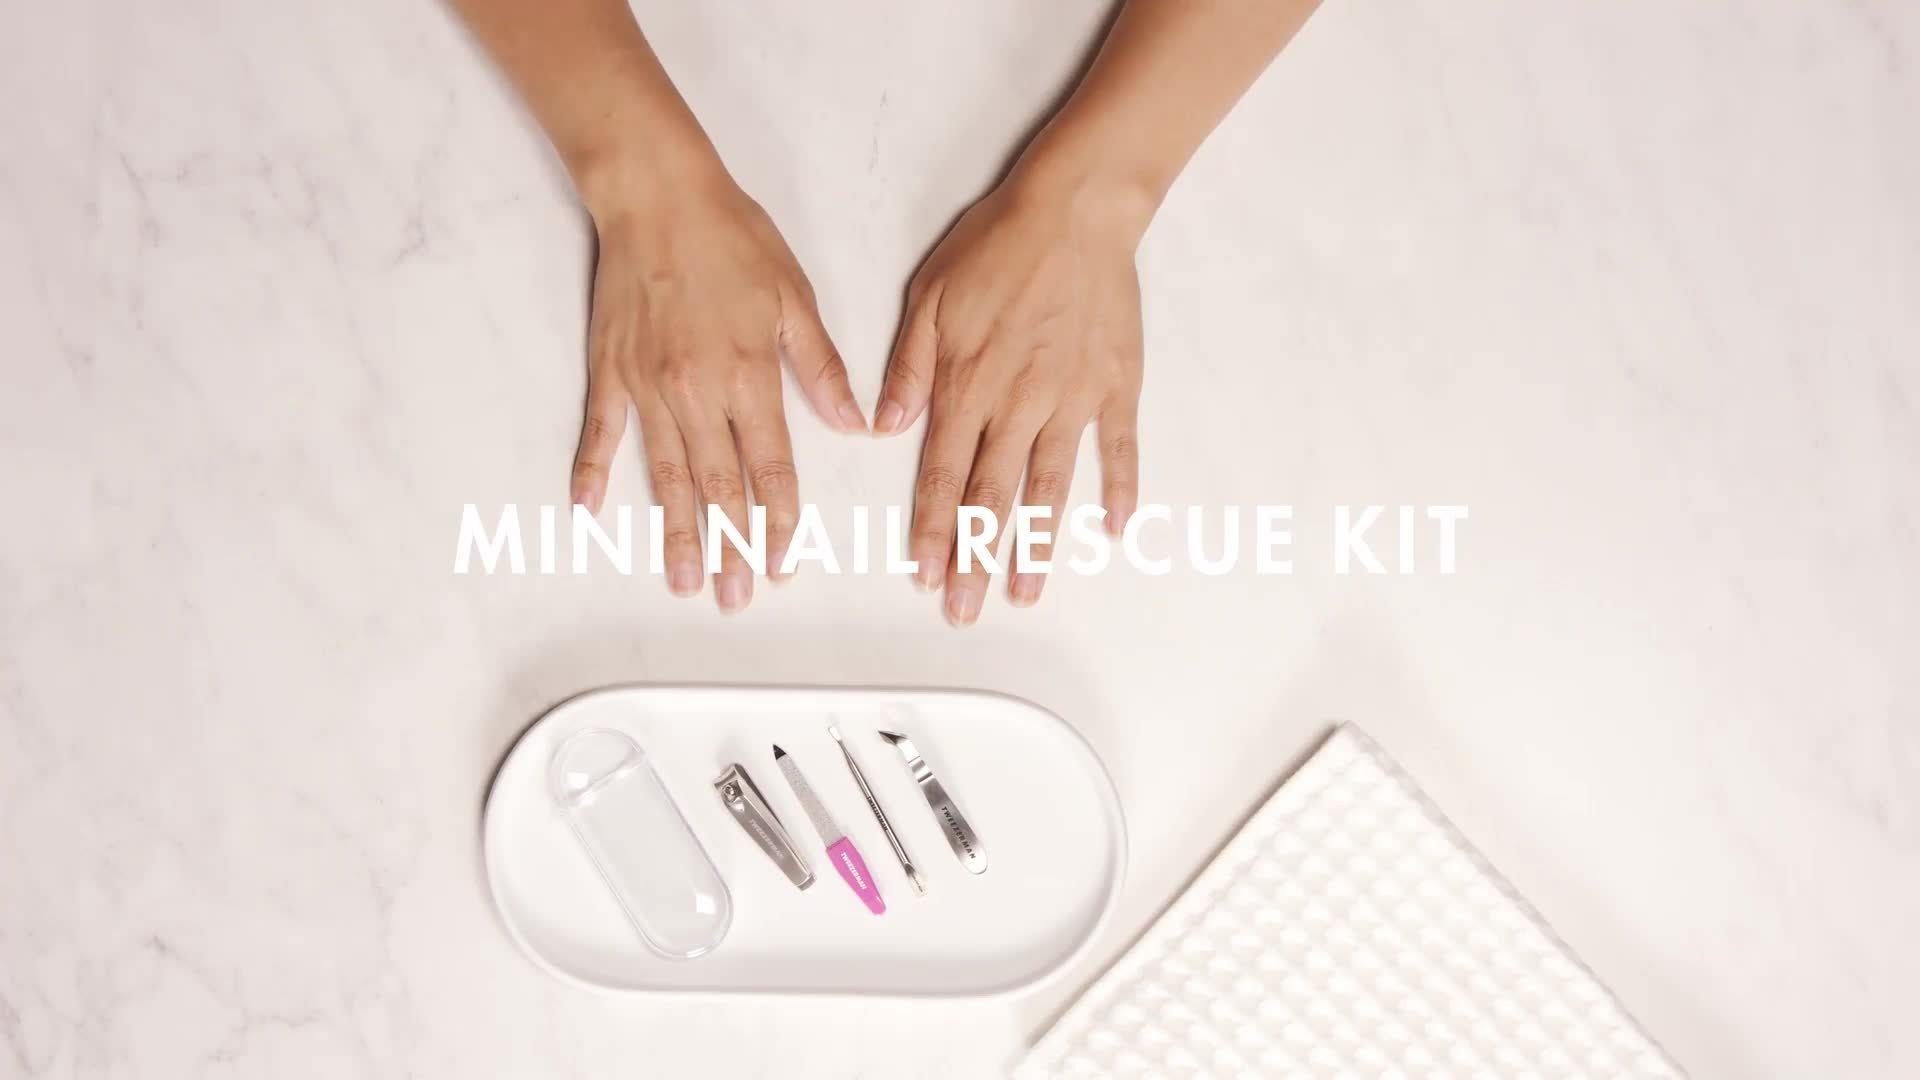 Mini Nail | Ulta Rescue Beauty Tweezerman Kit 